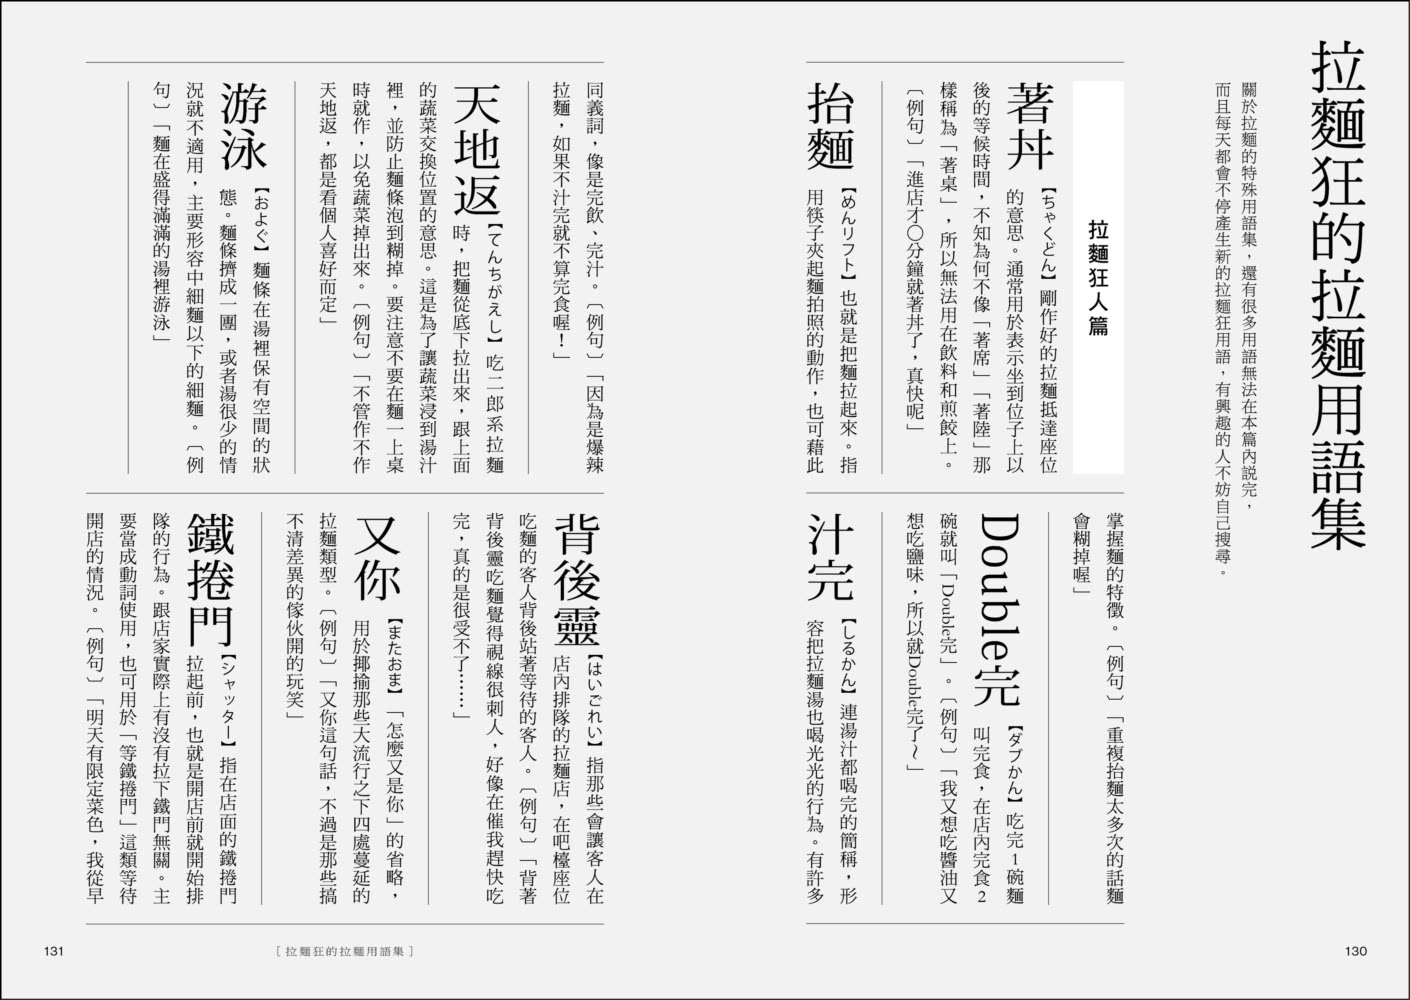 拉麵之魂：從派別系譜、年代發展到商業經營，探索日本最強國民美食的究極指南